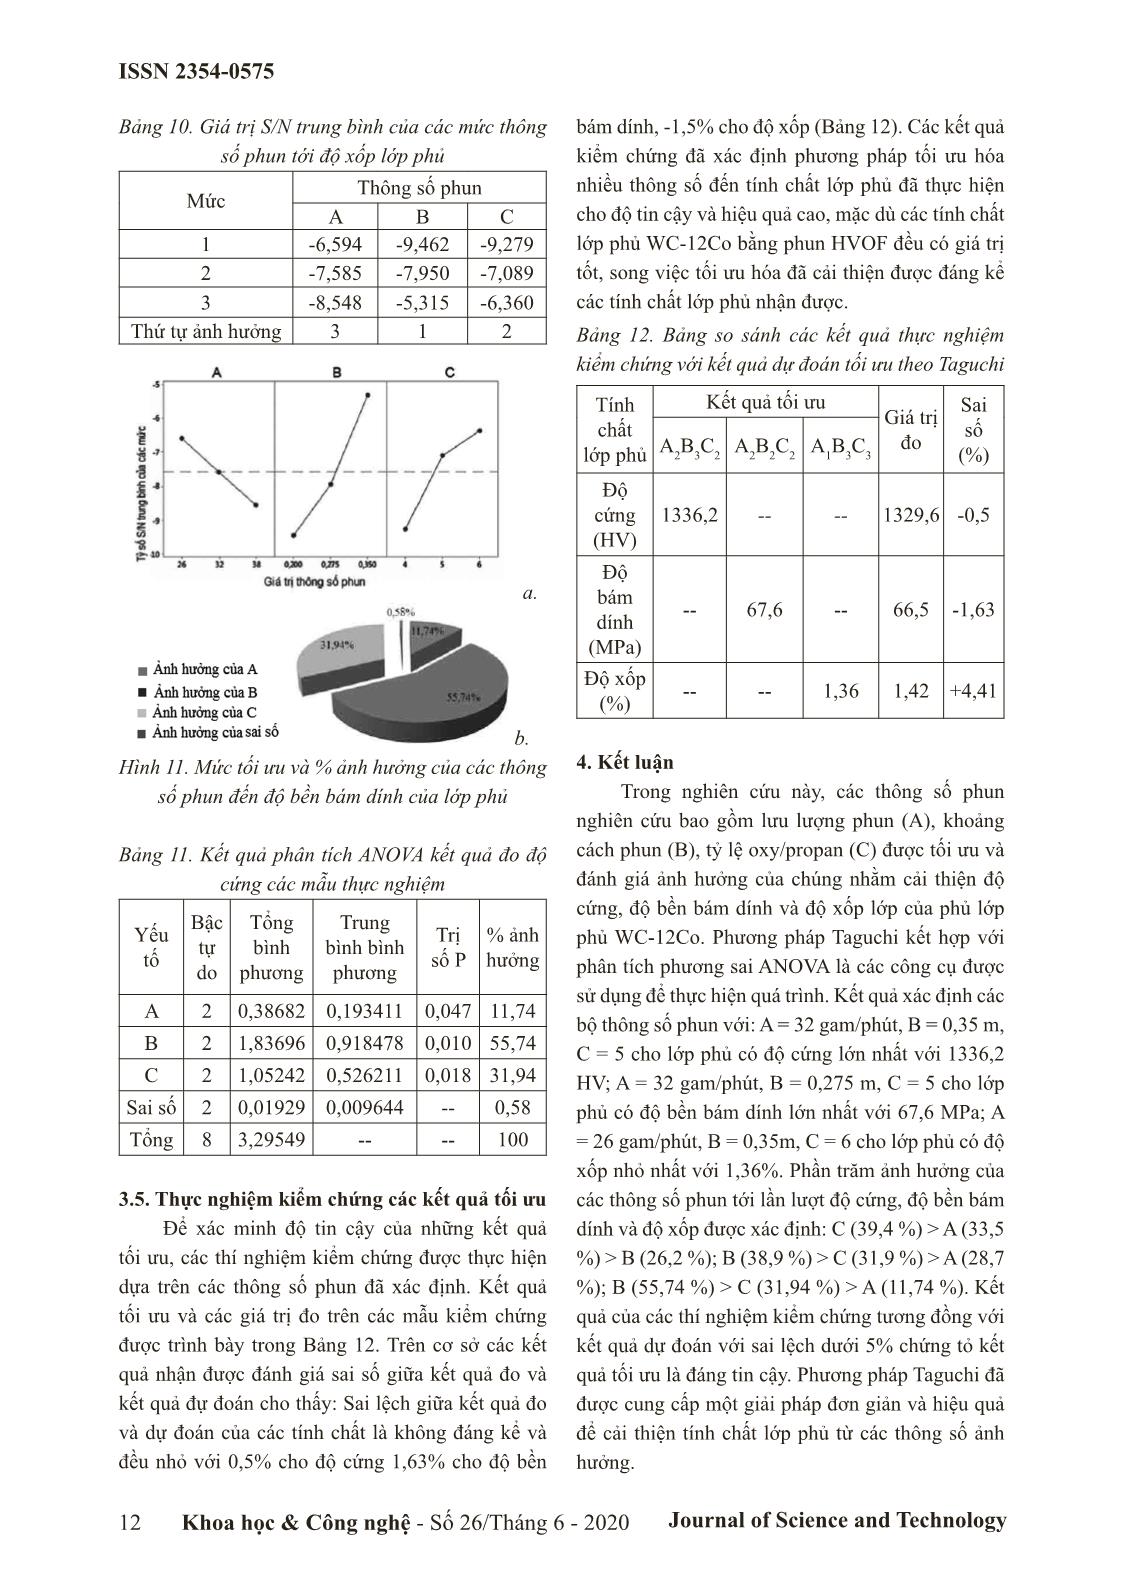 Nghiên cứu ảnh hưởng của lưu lượng phun, khoảng cách phun, tỷ lệ oxy/ propan đến độ cứng, độ bền bám dính và độ xốp của lớp phủ WC-12CO bằng phun HVOF trang 6